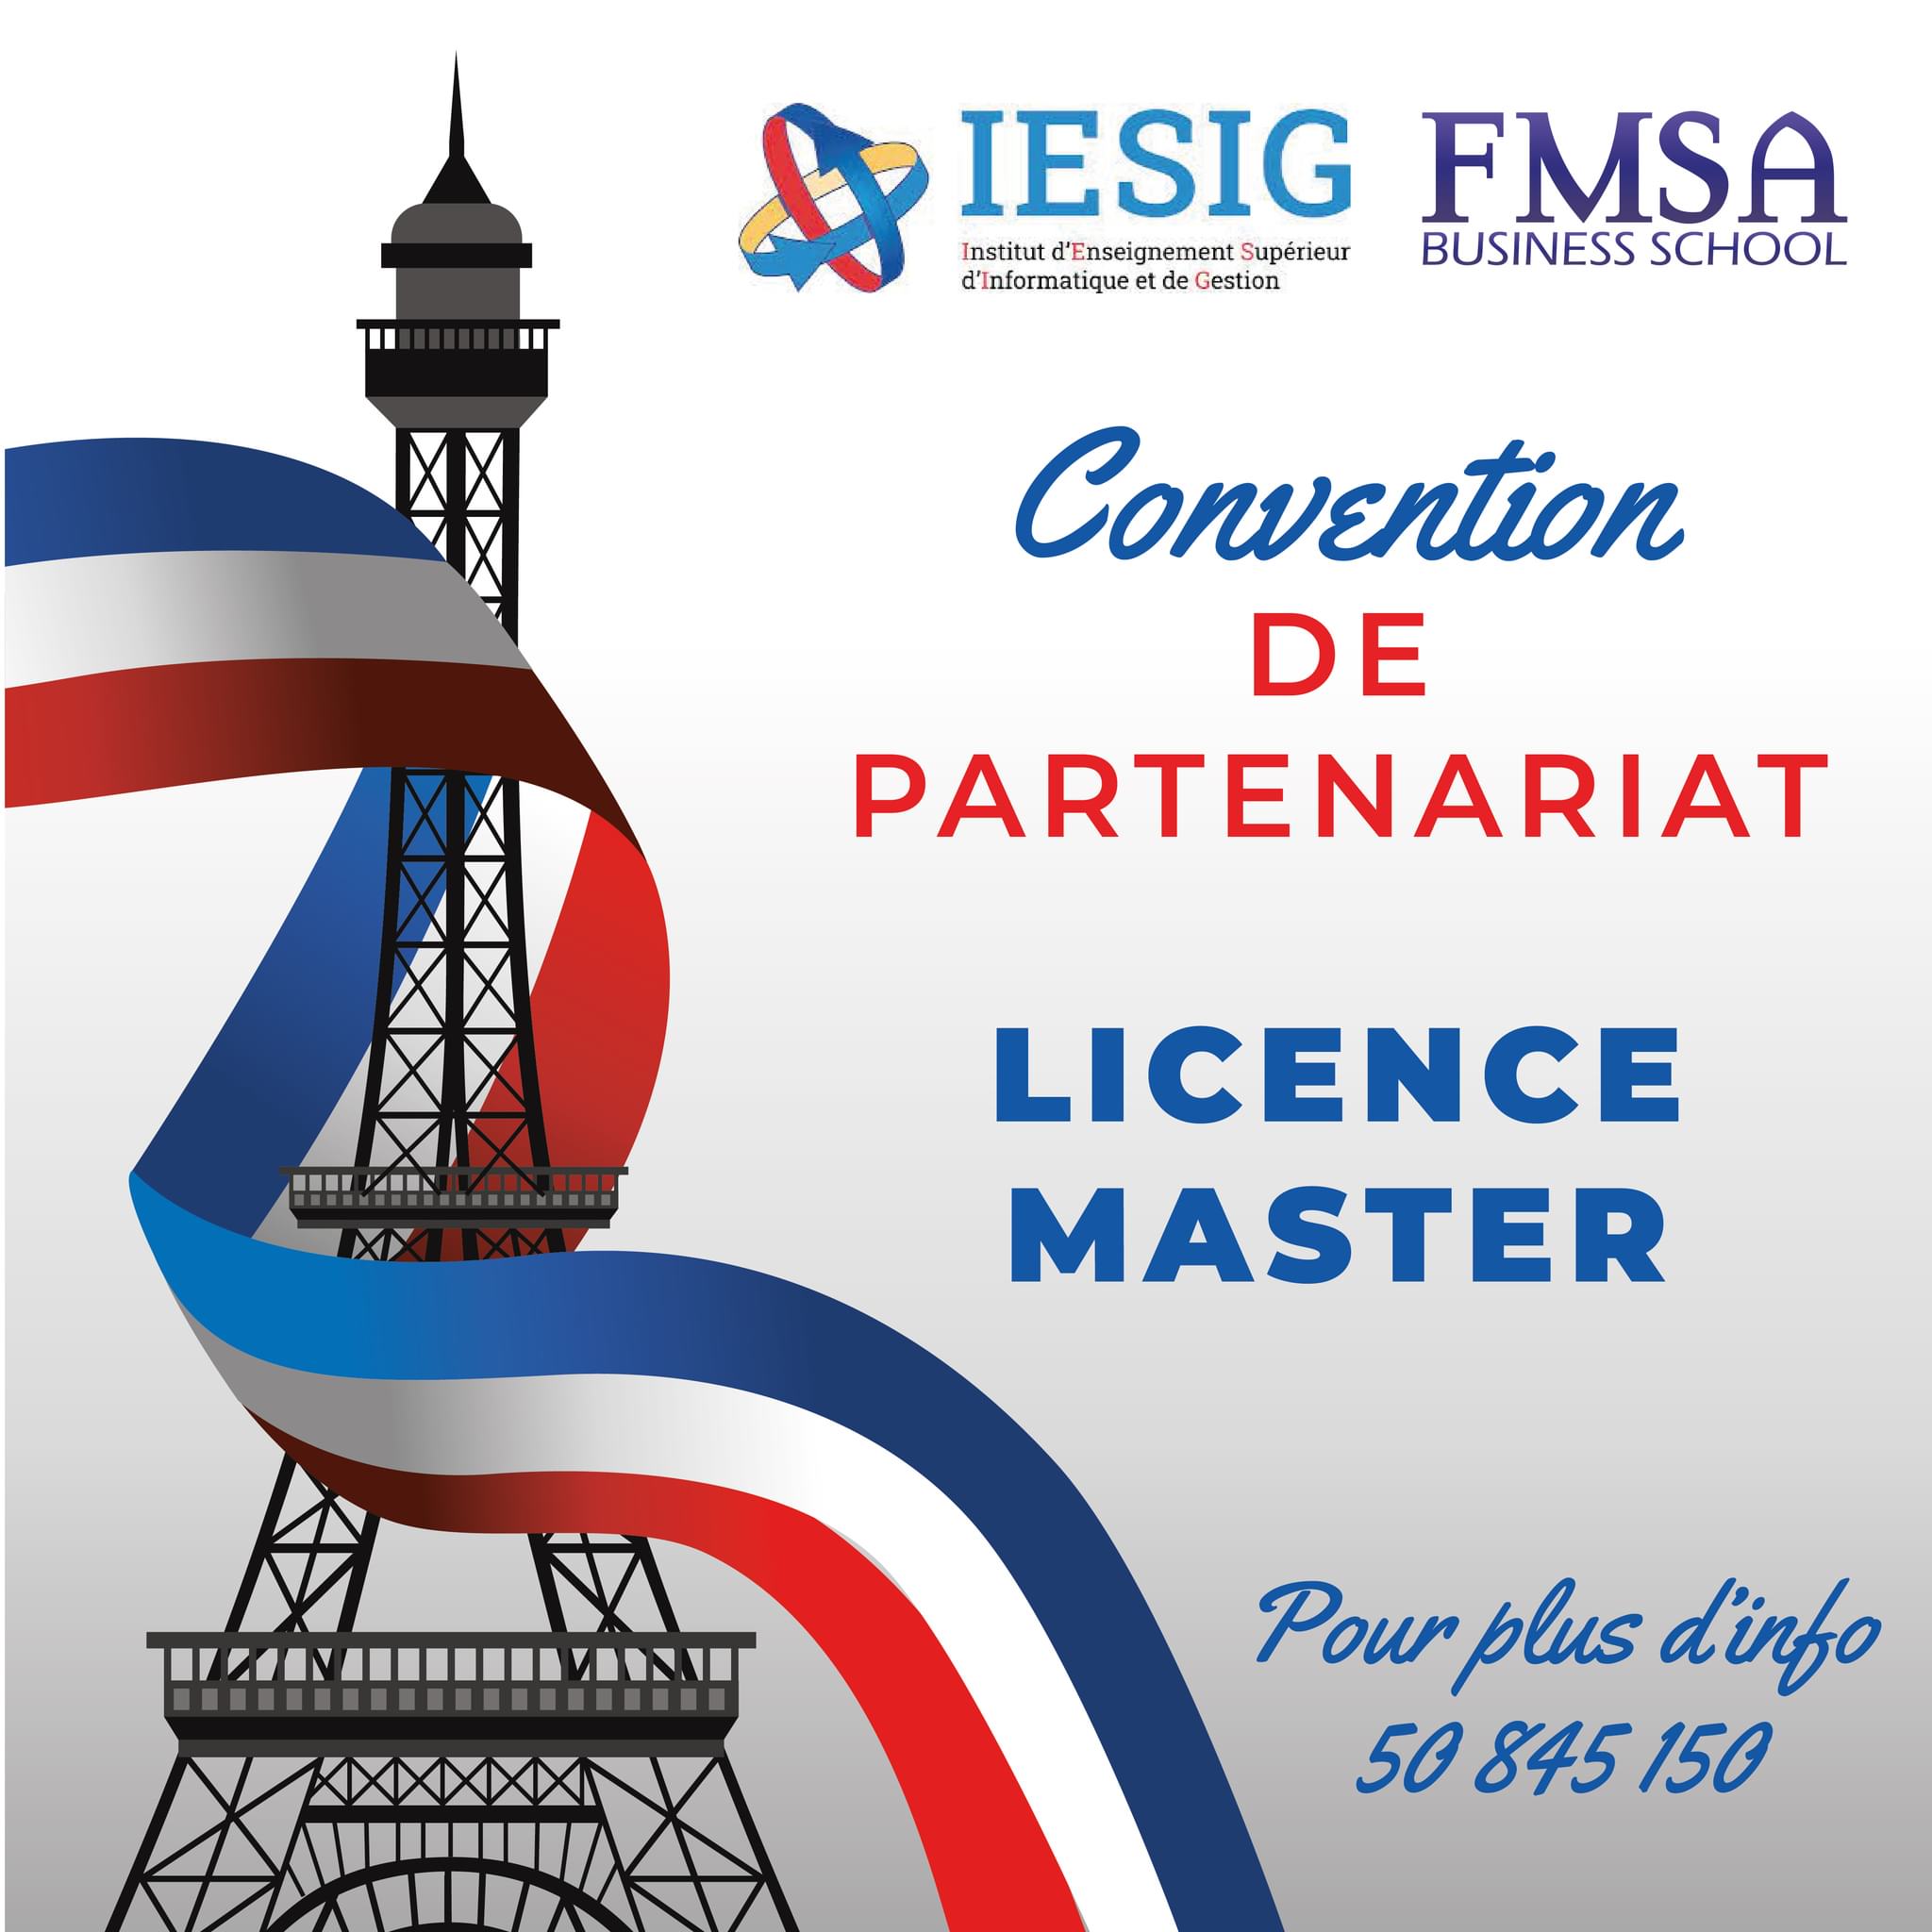 Partenariat FMSA Business School/IESIG Paris